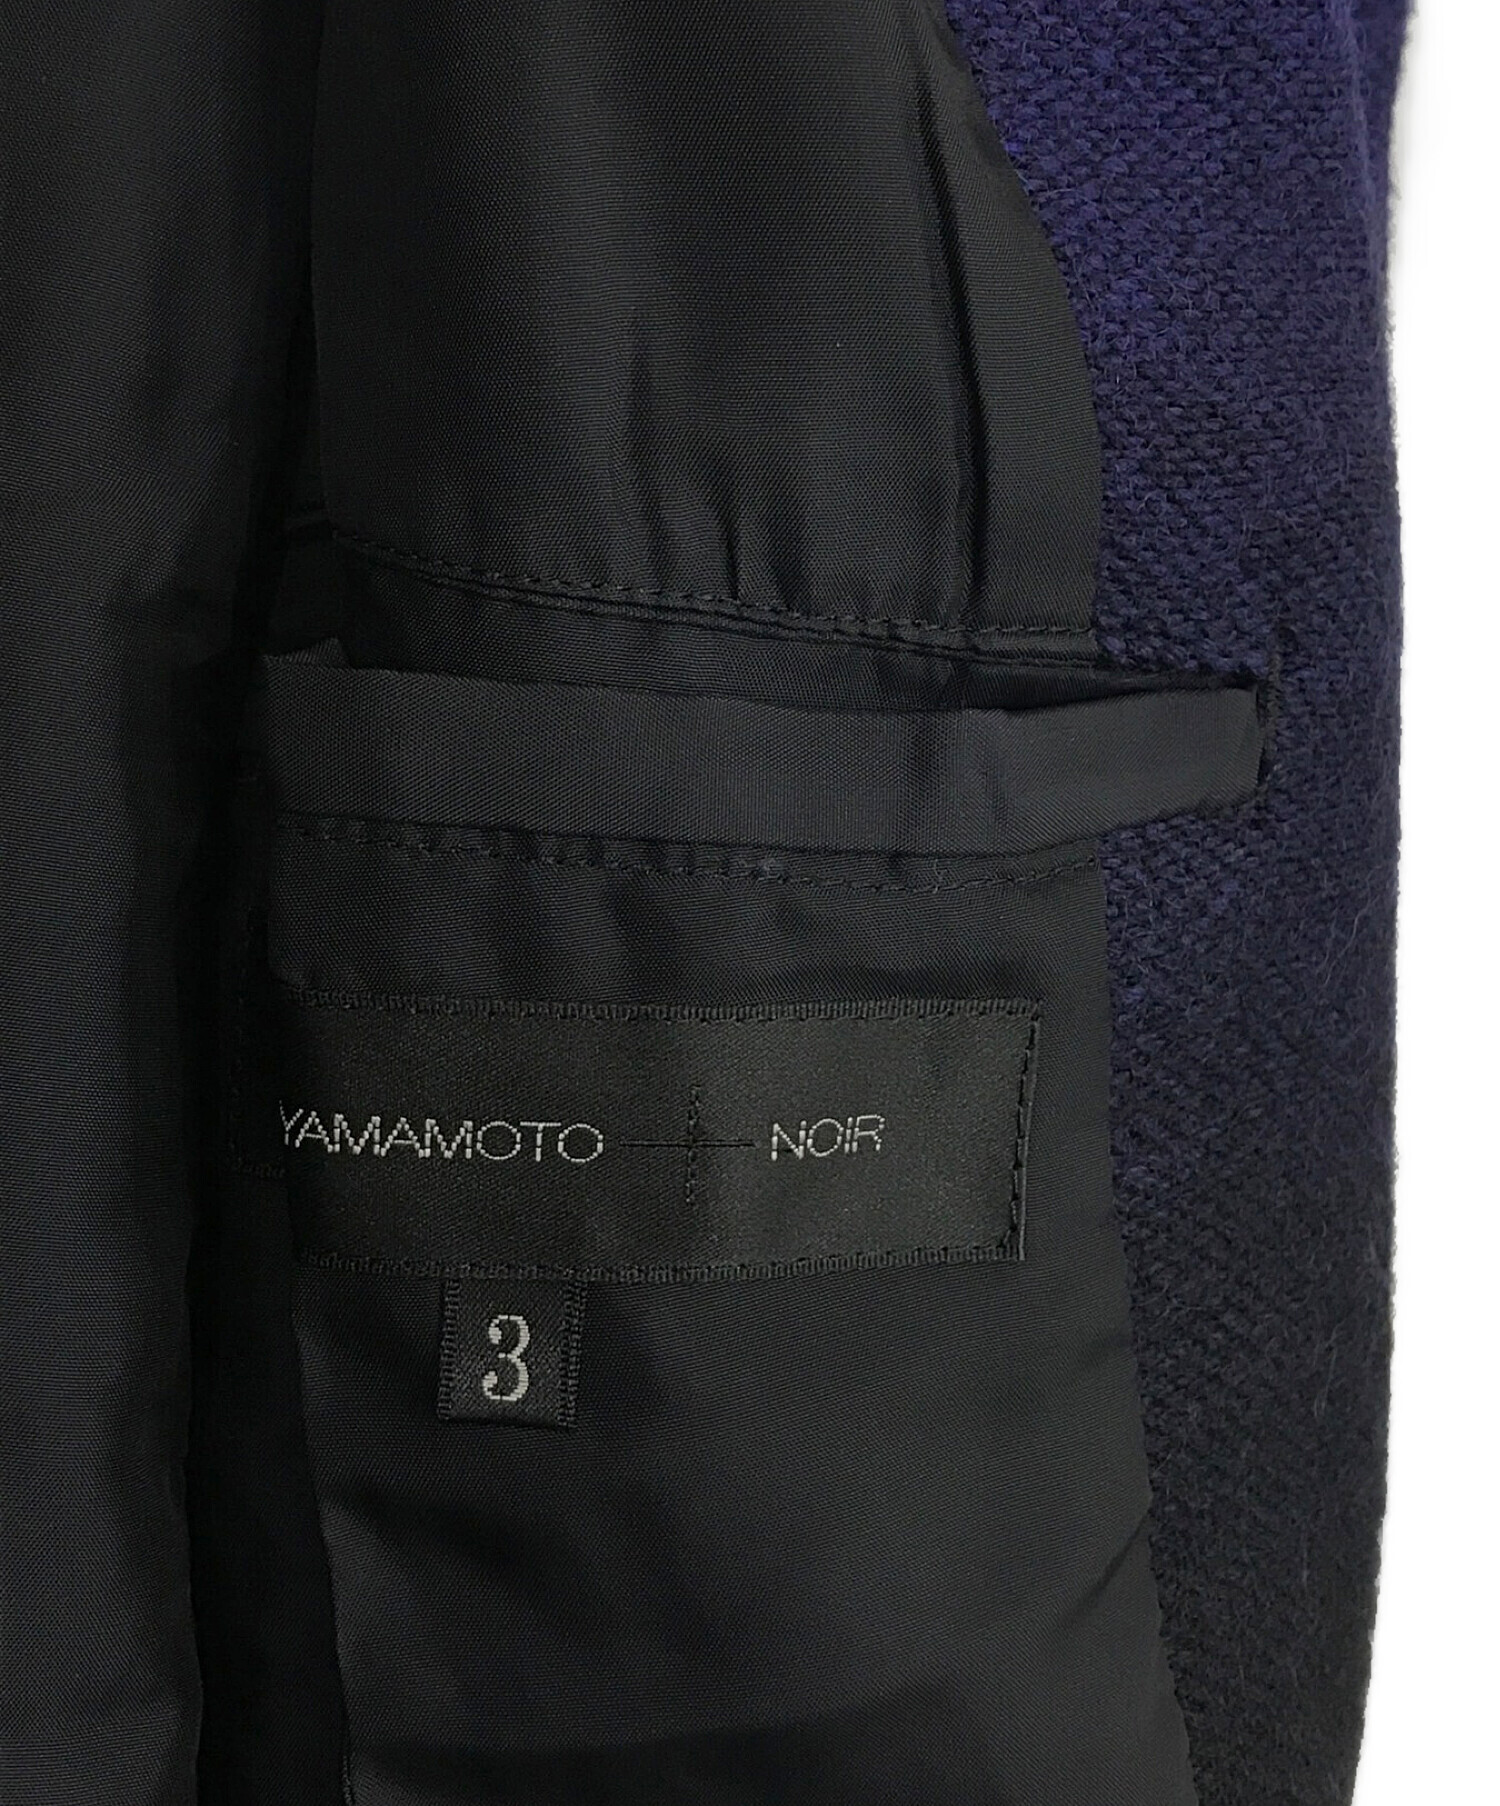 yohji yamamoto+Noir ヨウジヤマモトプリュスノアール 18SS レザーコンビウールギャバジンバックパック ブラック NW-I01-160